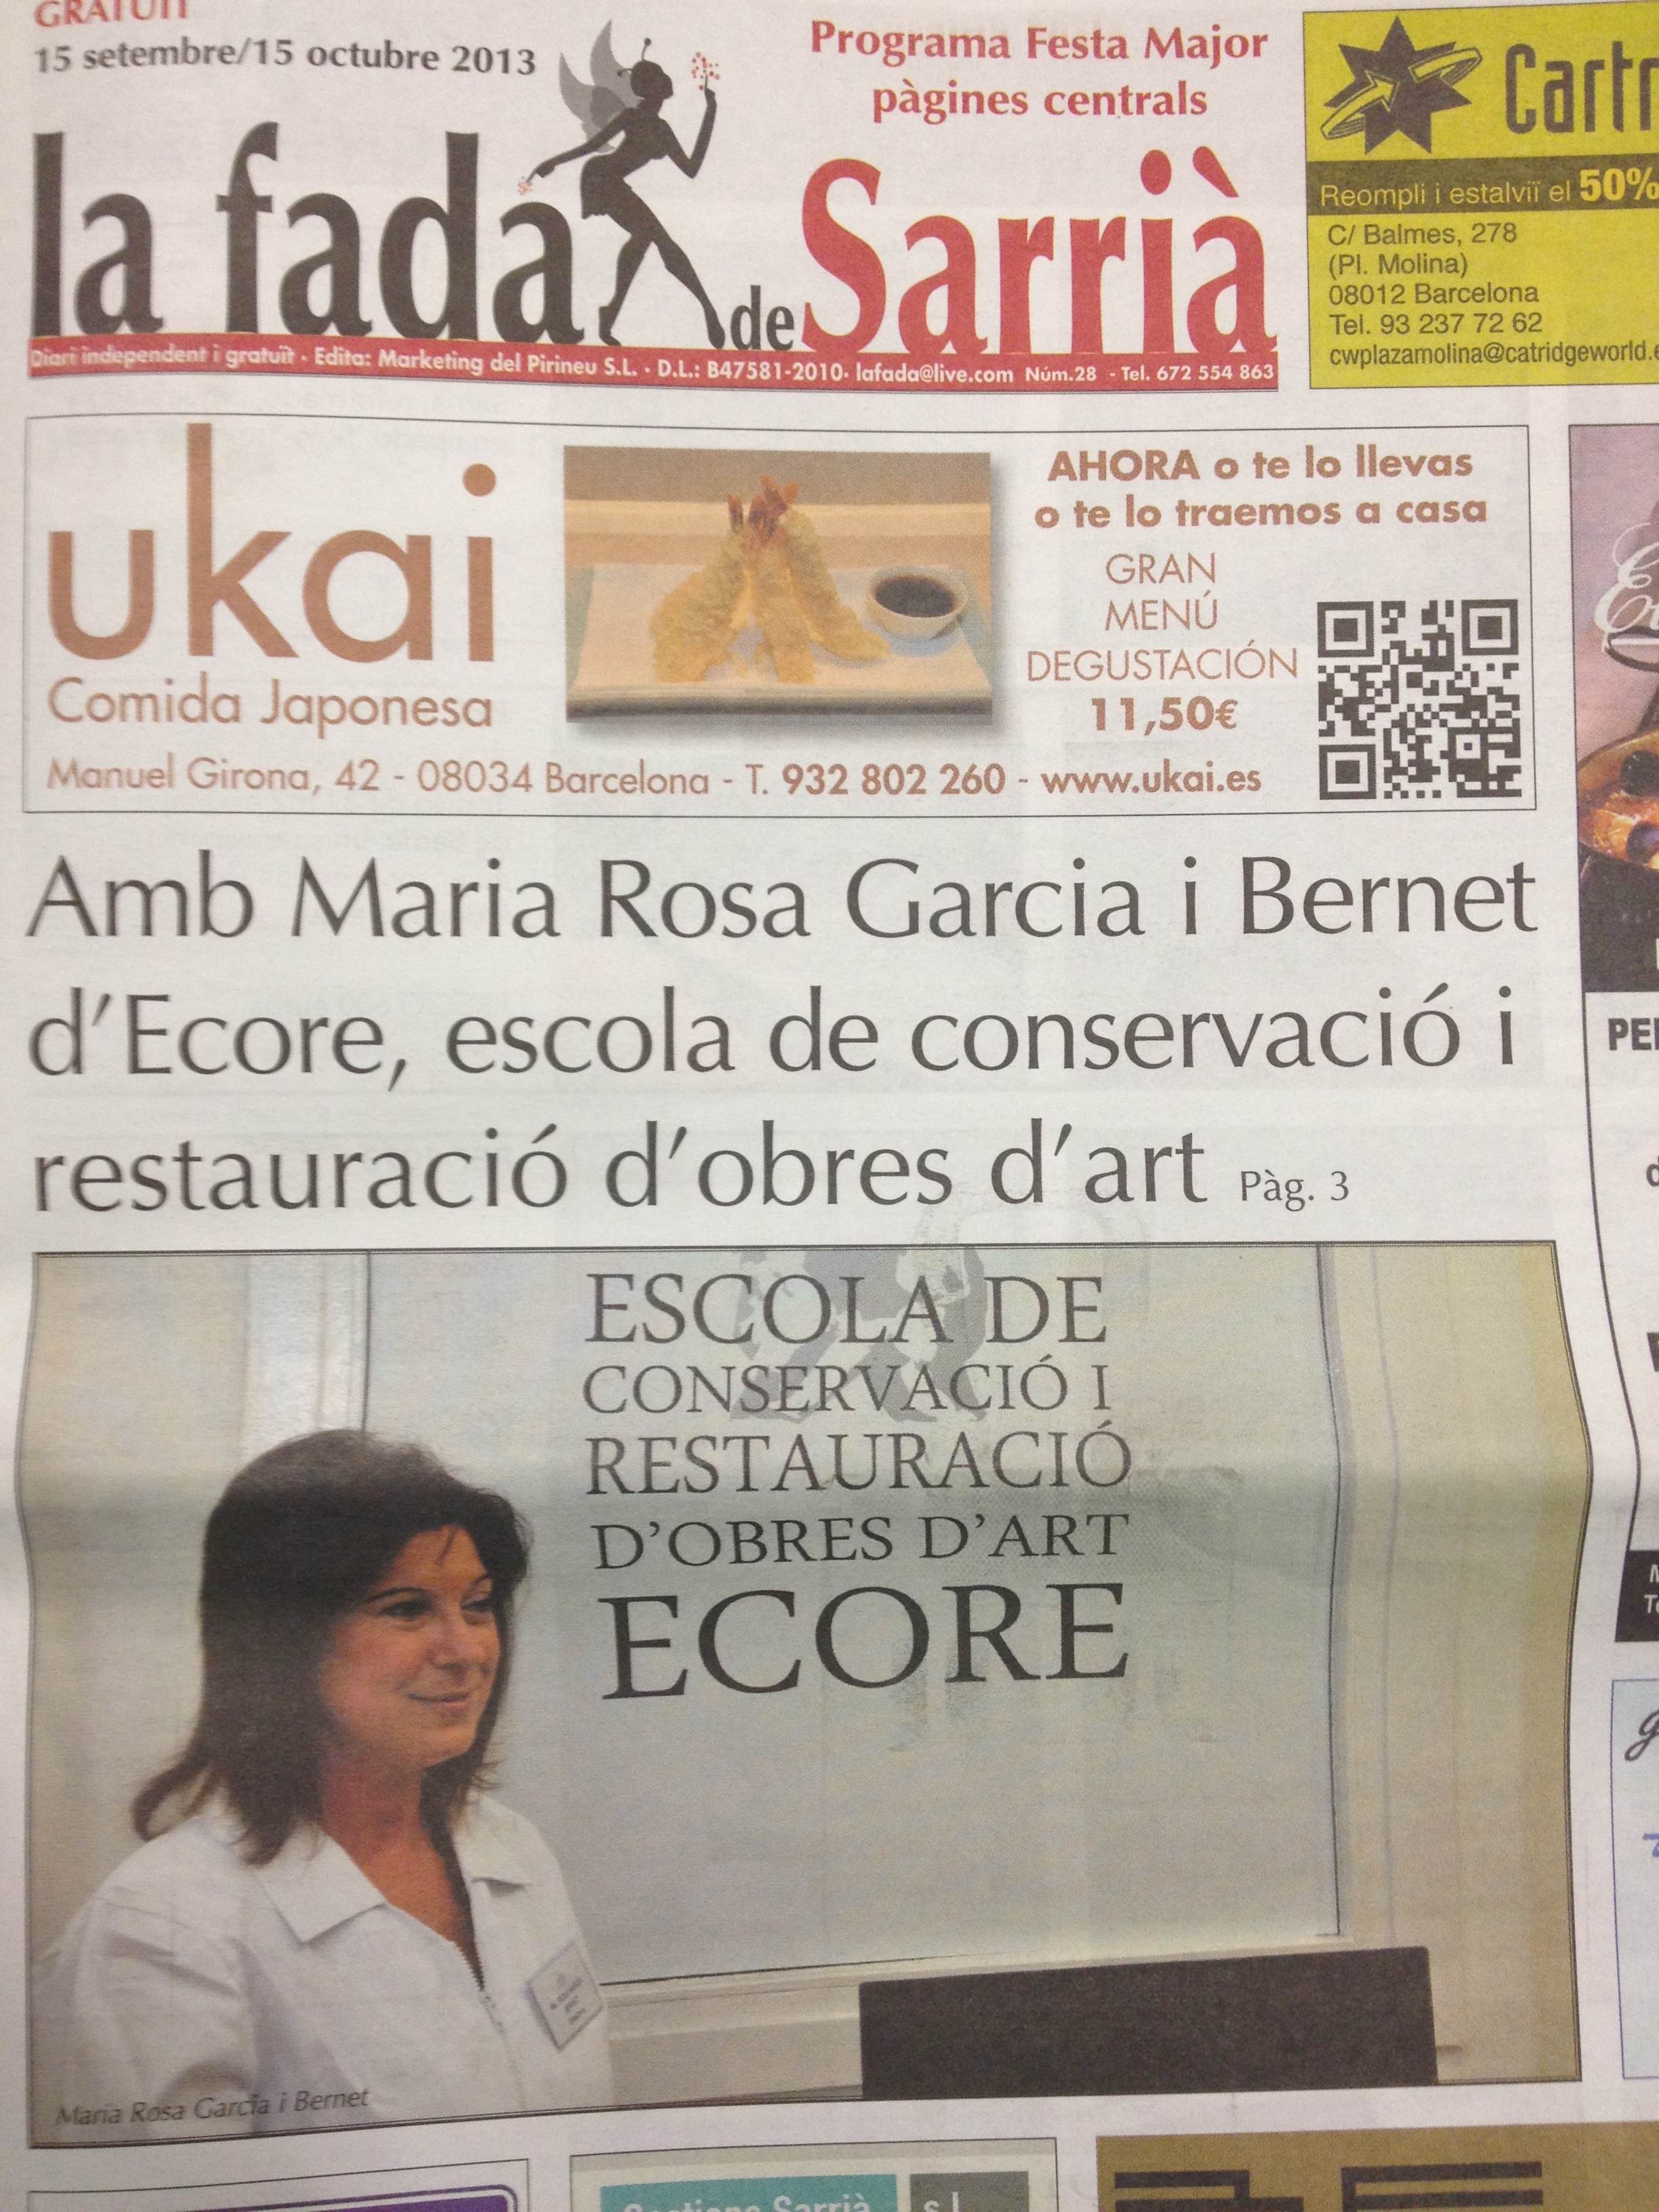 En el número de septiembre de la revista La Fada de Sarrià, podéis encontrar la entrevista realizada a la directora de Ecore, Ma. Rosa García Bernet. Aquí tenéis el enlace […]